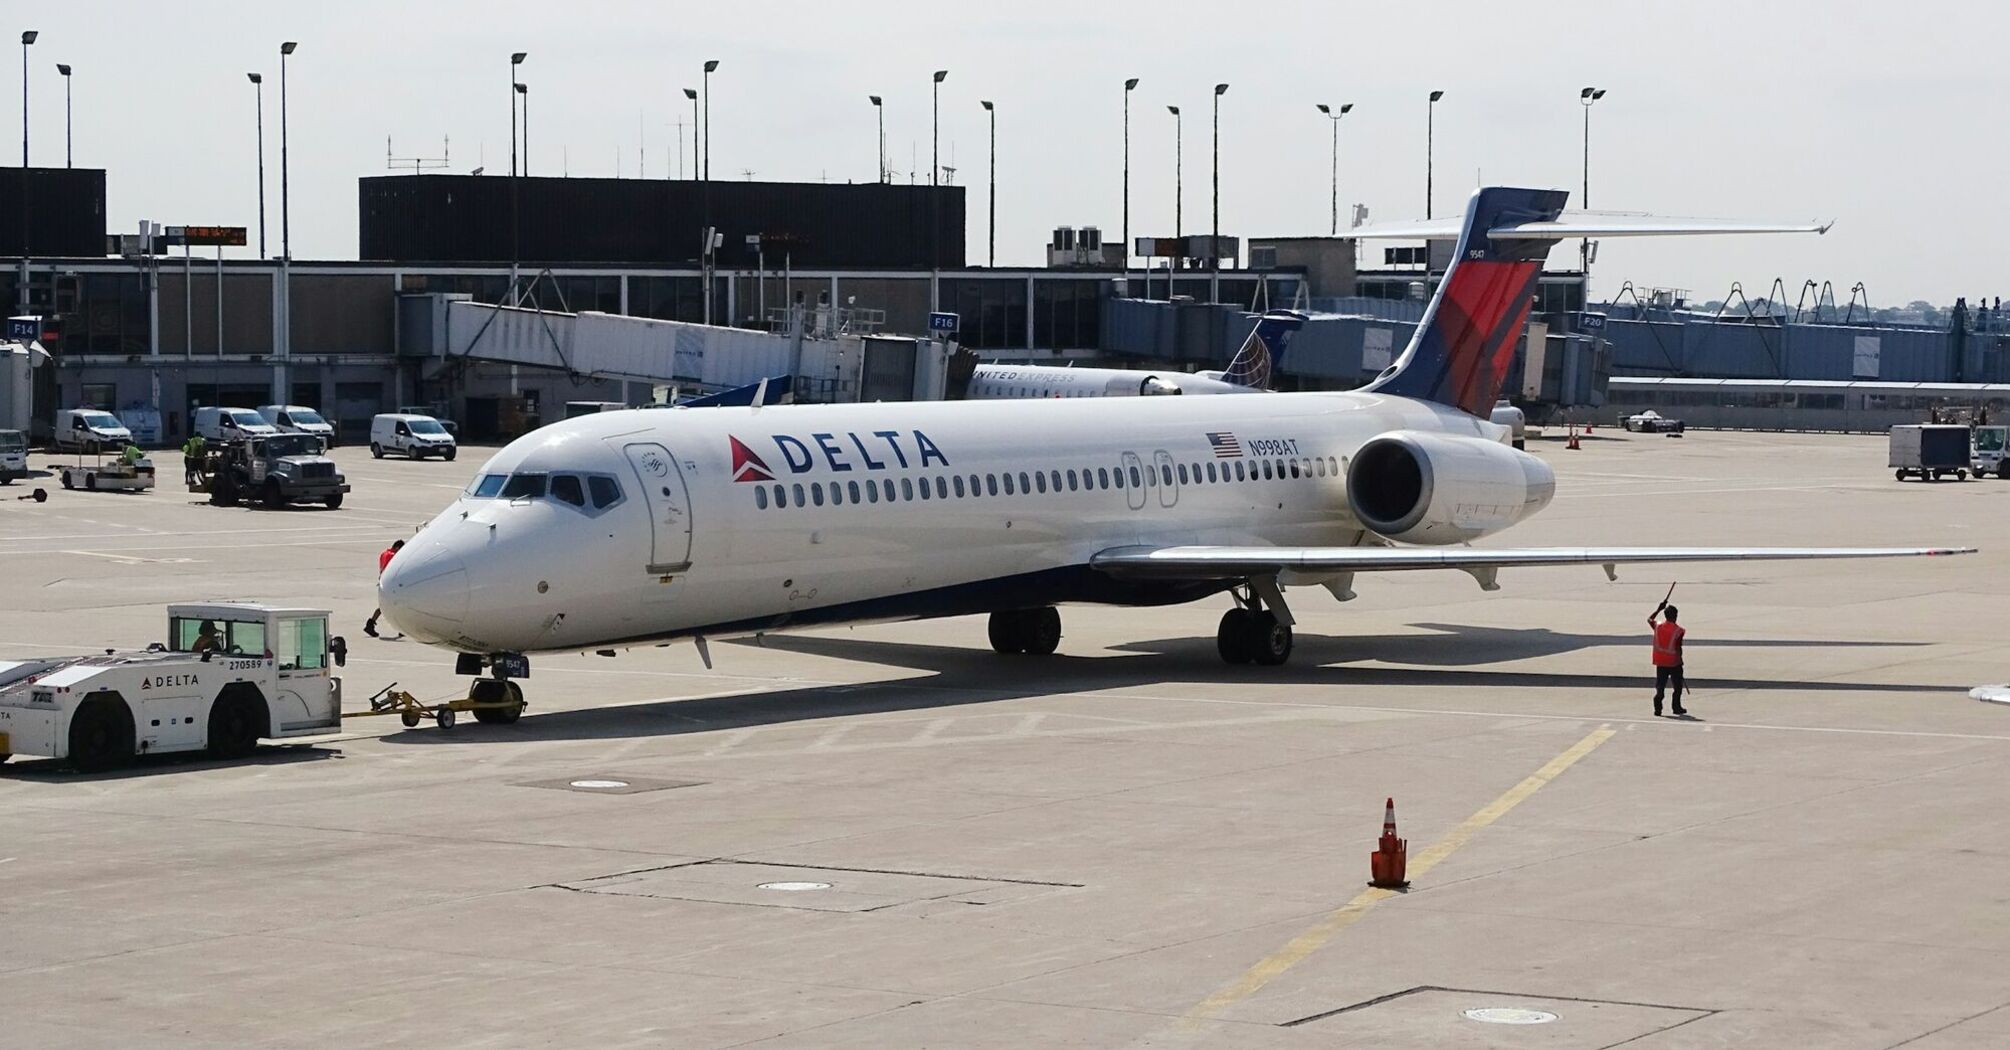 Delta Air Lines aircraft at the airport